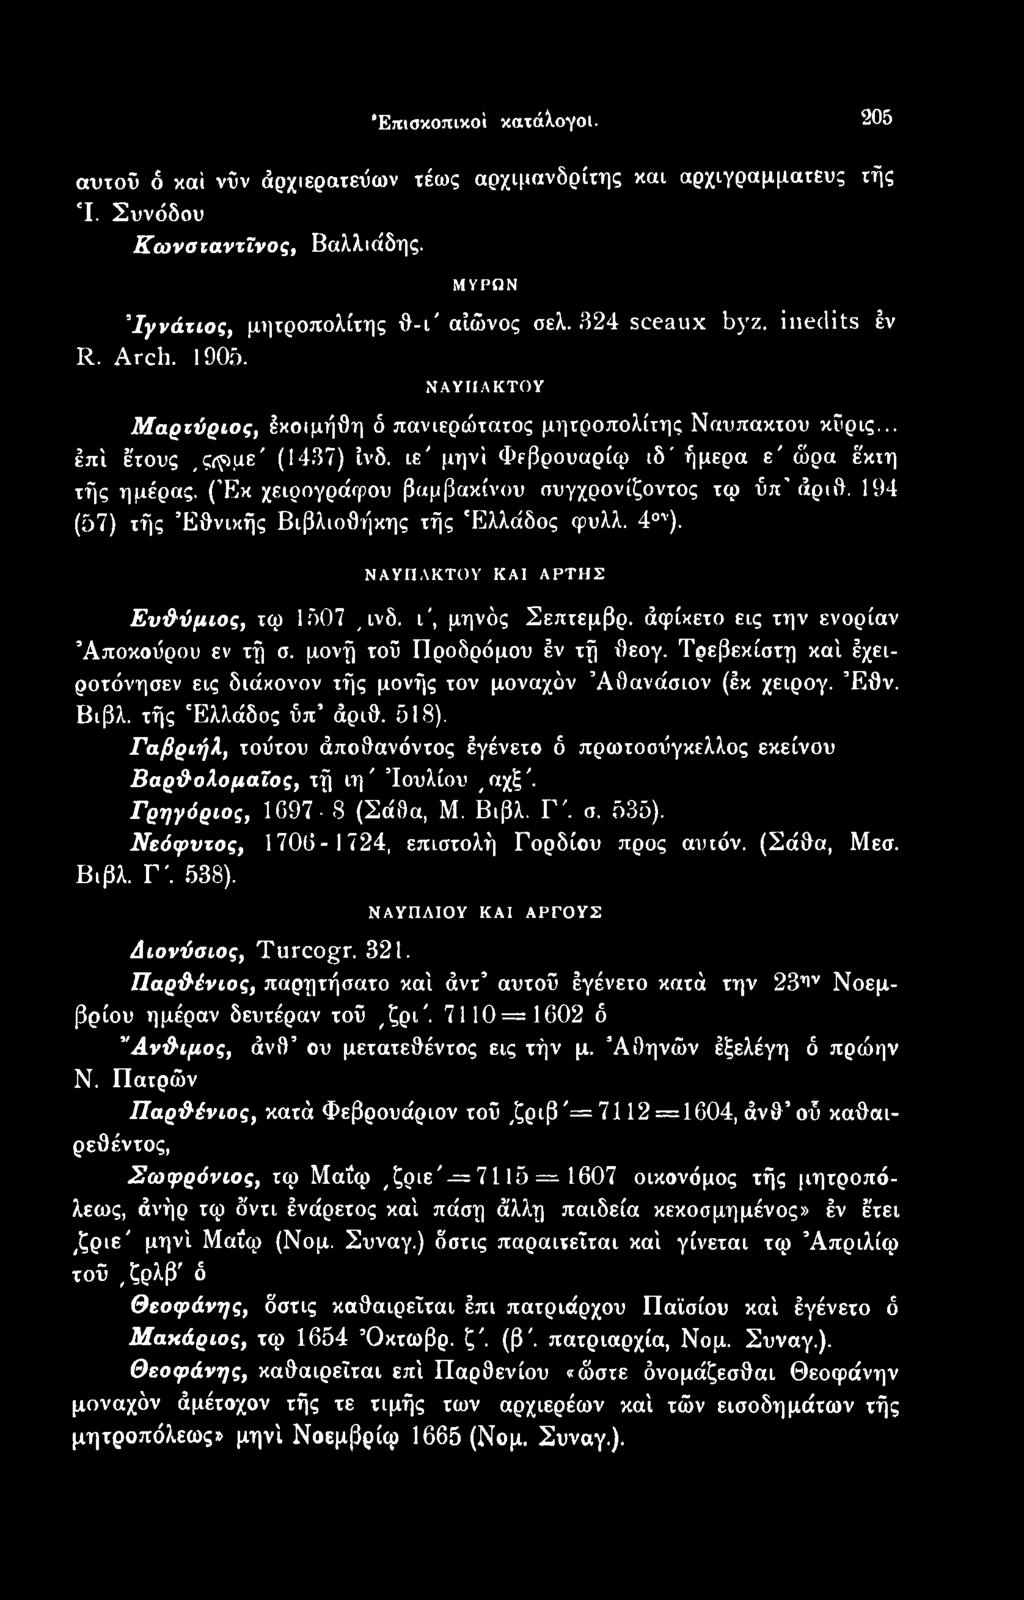 Γαβριήλ, τούτου άποθανόντος έγένετο ό πρωτοσύγκελλος εκείνου Βαρθολομαίος, τή ιη' Ιουλίου,αχξ'. Γρηγόριος, 1G97-8 (Σάθα, Μ. Βιβλ. Γ'. σ. 535). Νεόφυτος, 1706-1724, επιστολή Γορδίου προς αυτόν.